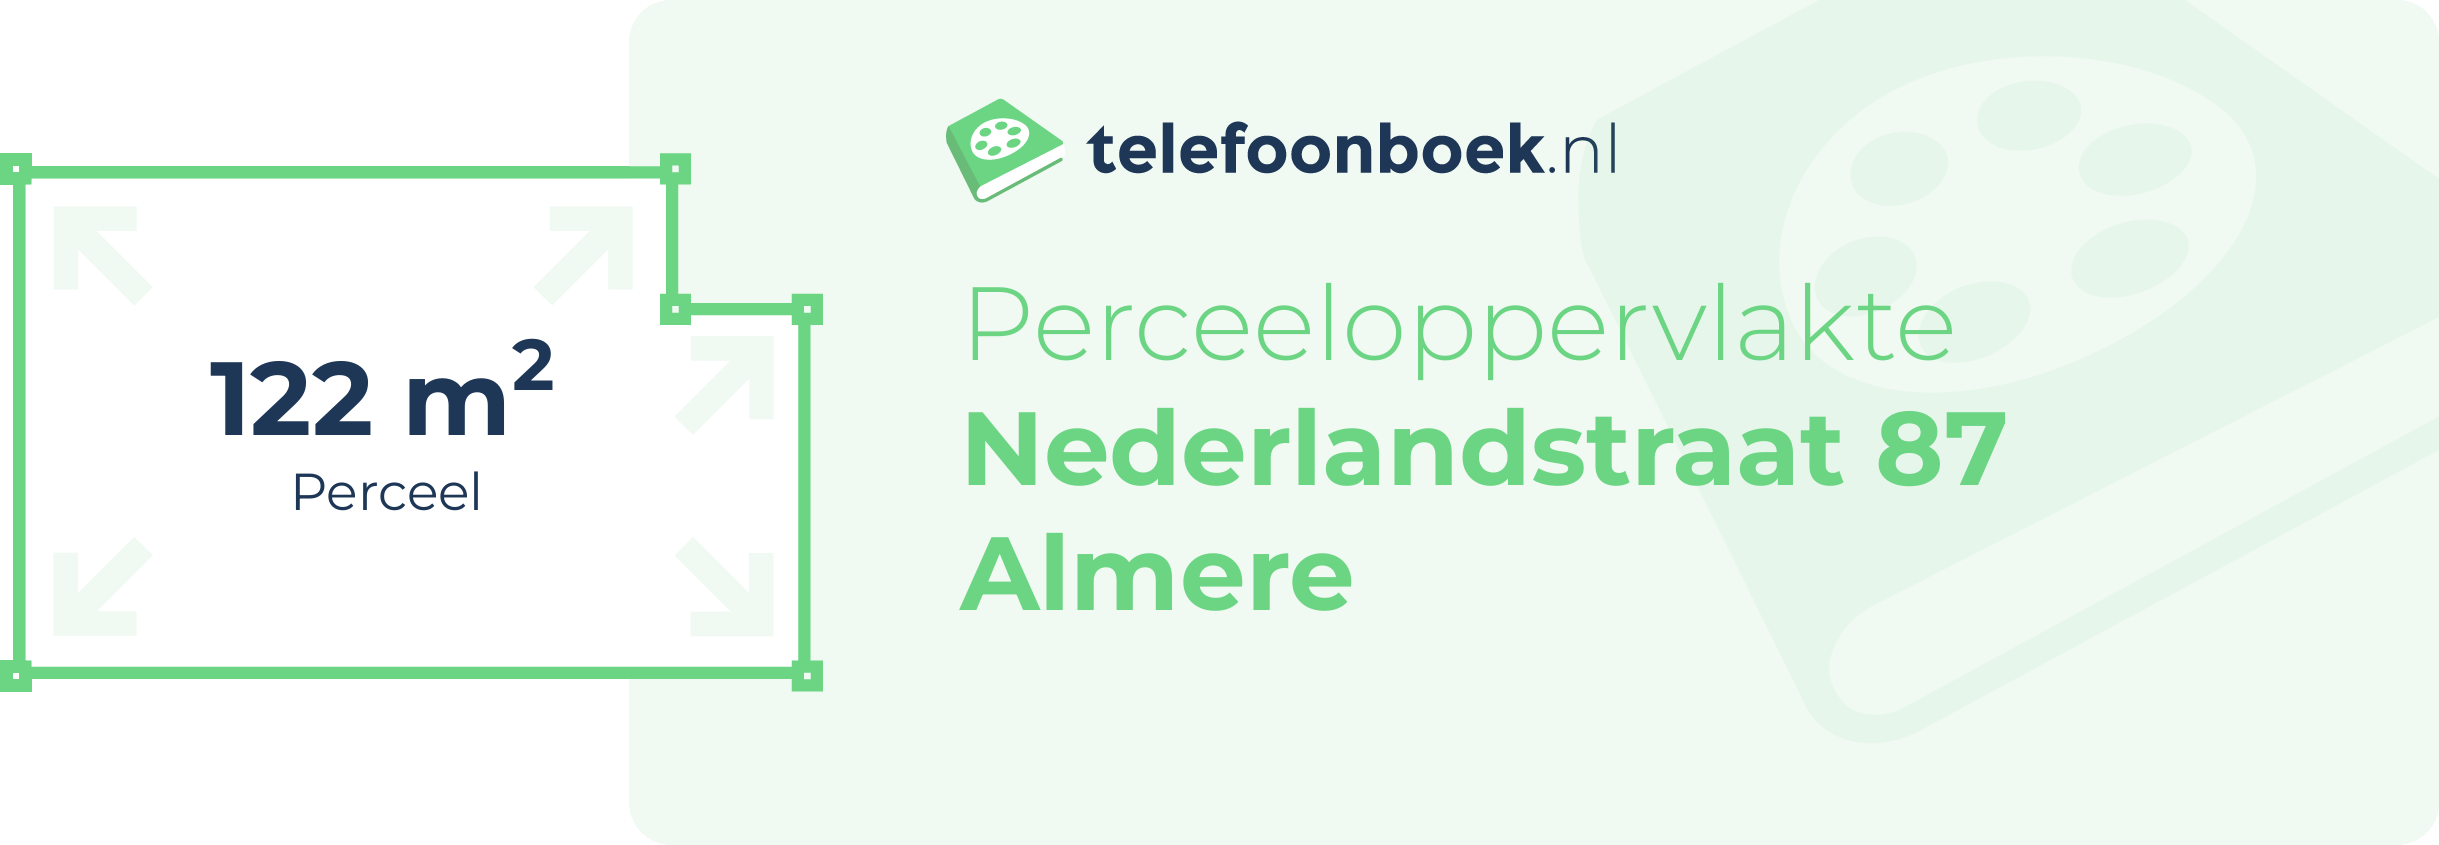 Perceeloppervlakte Nederlandstraat 87 Almere